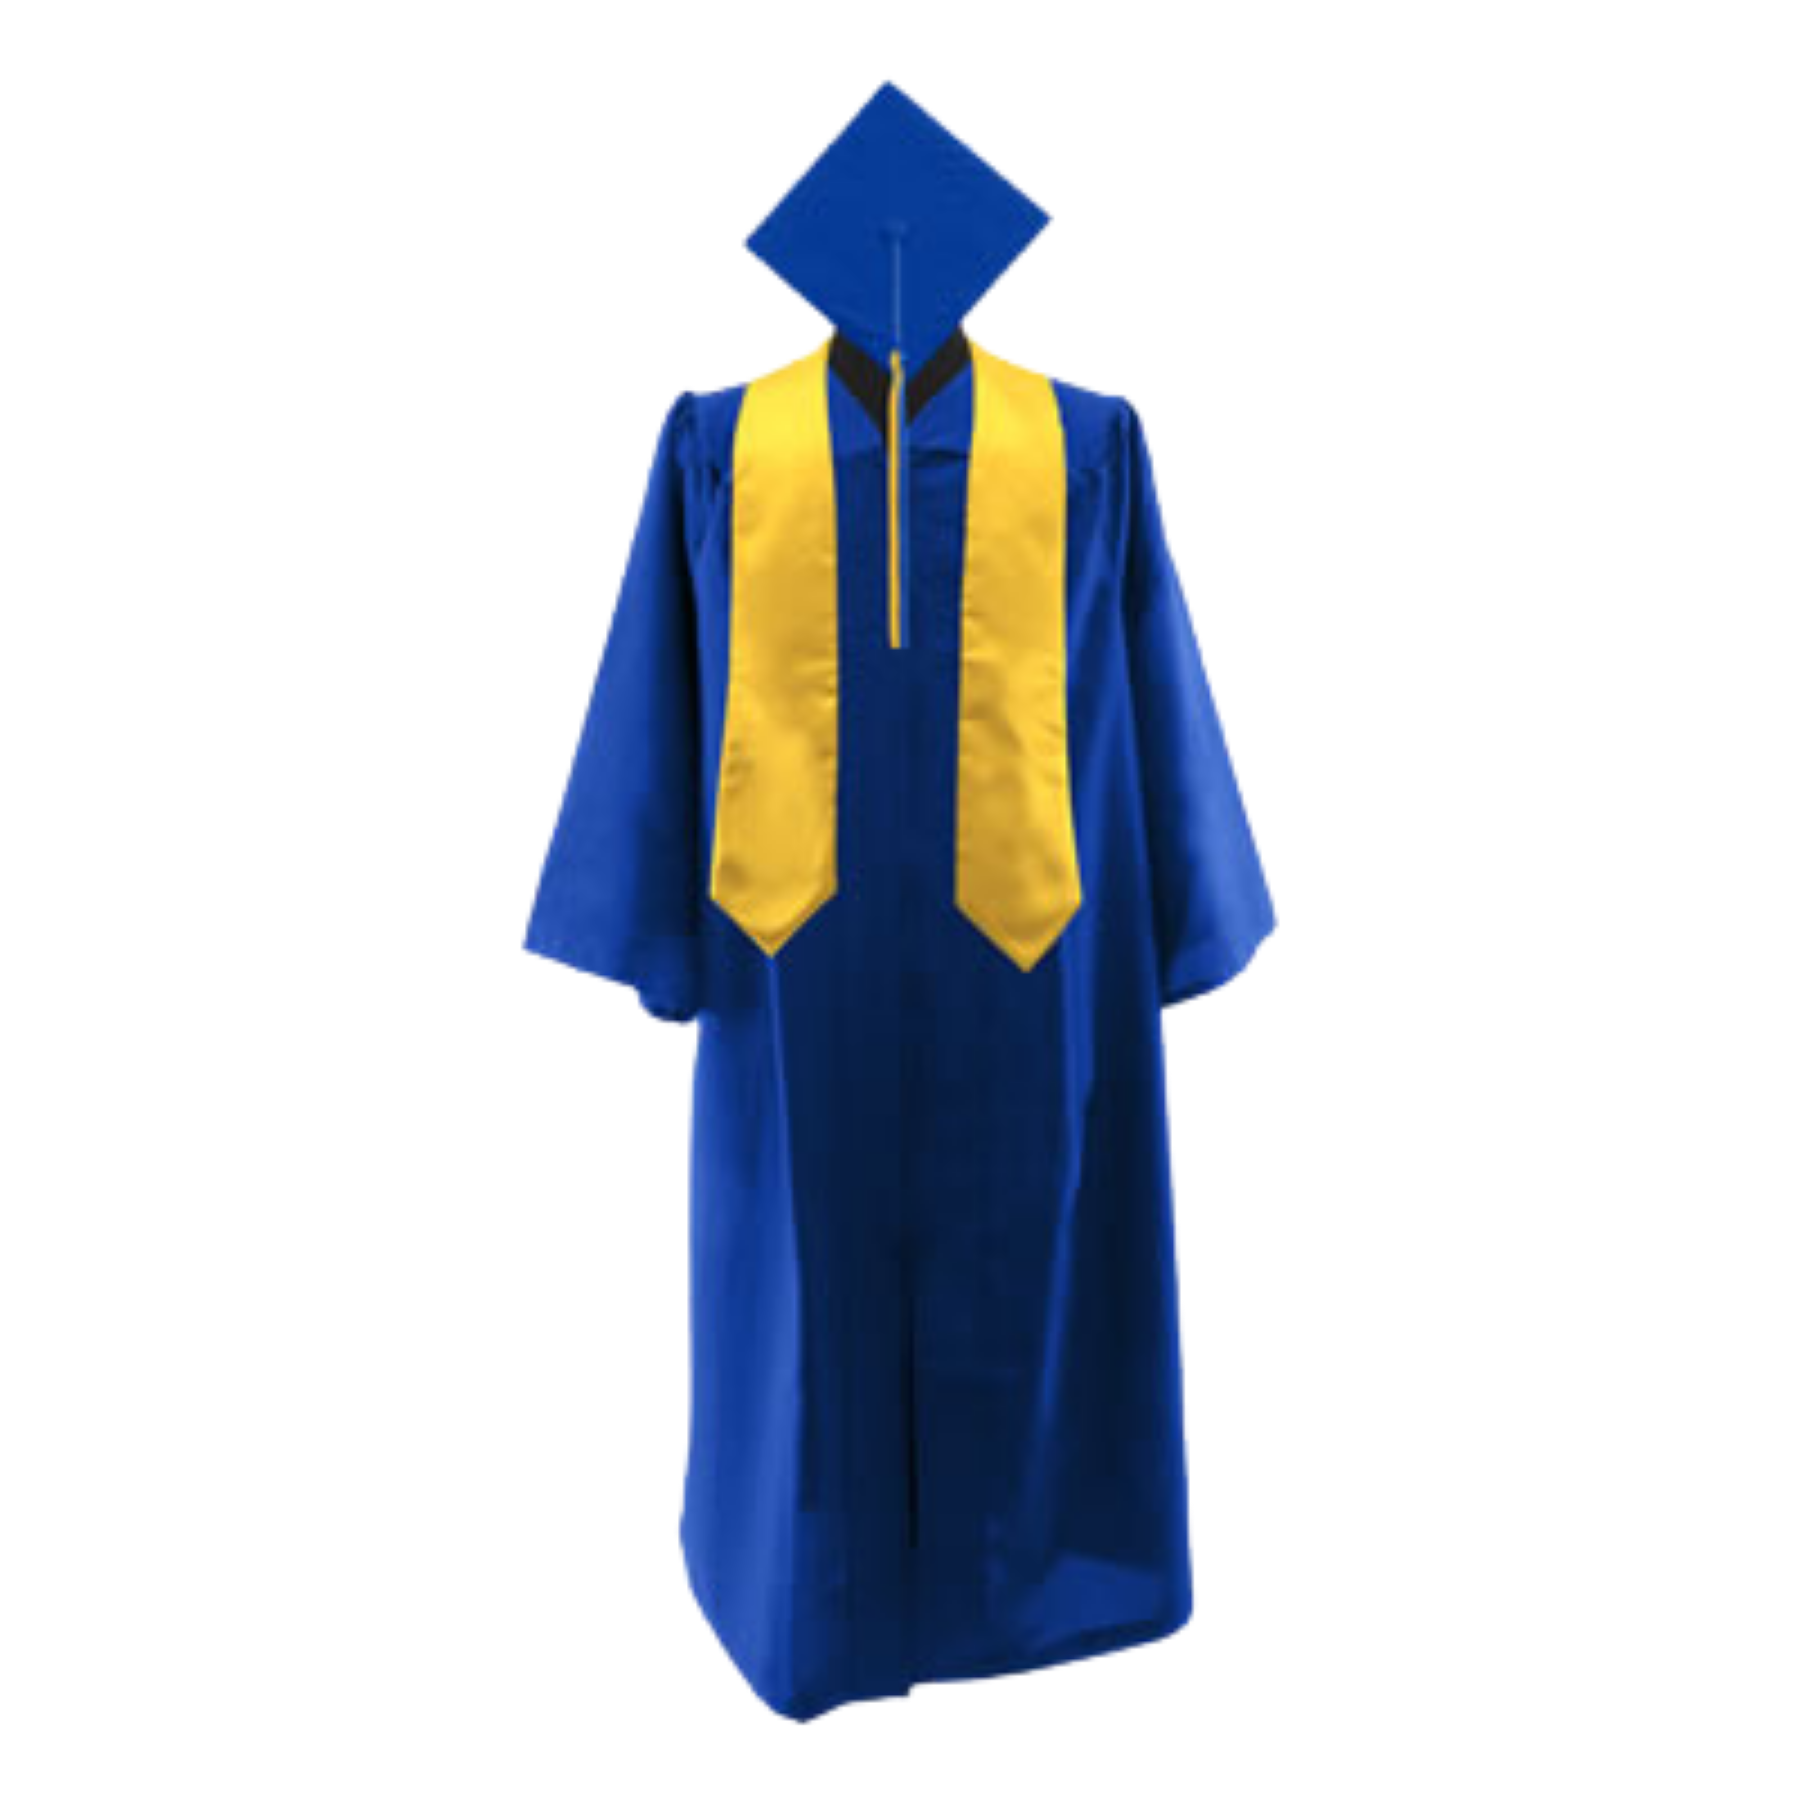 Bachelor XL Set (cap, gown, tassel, stole)